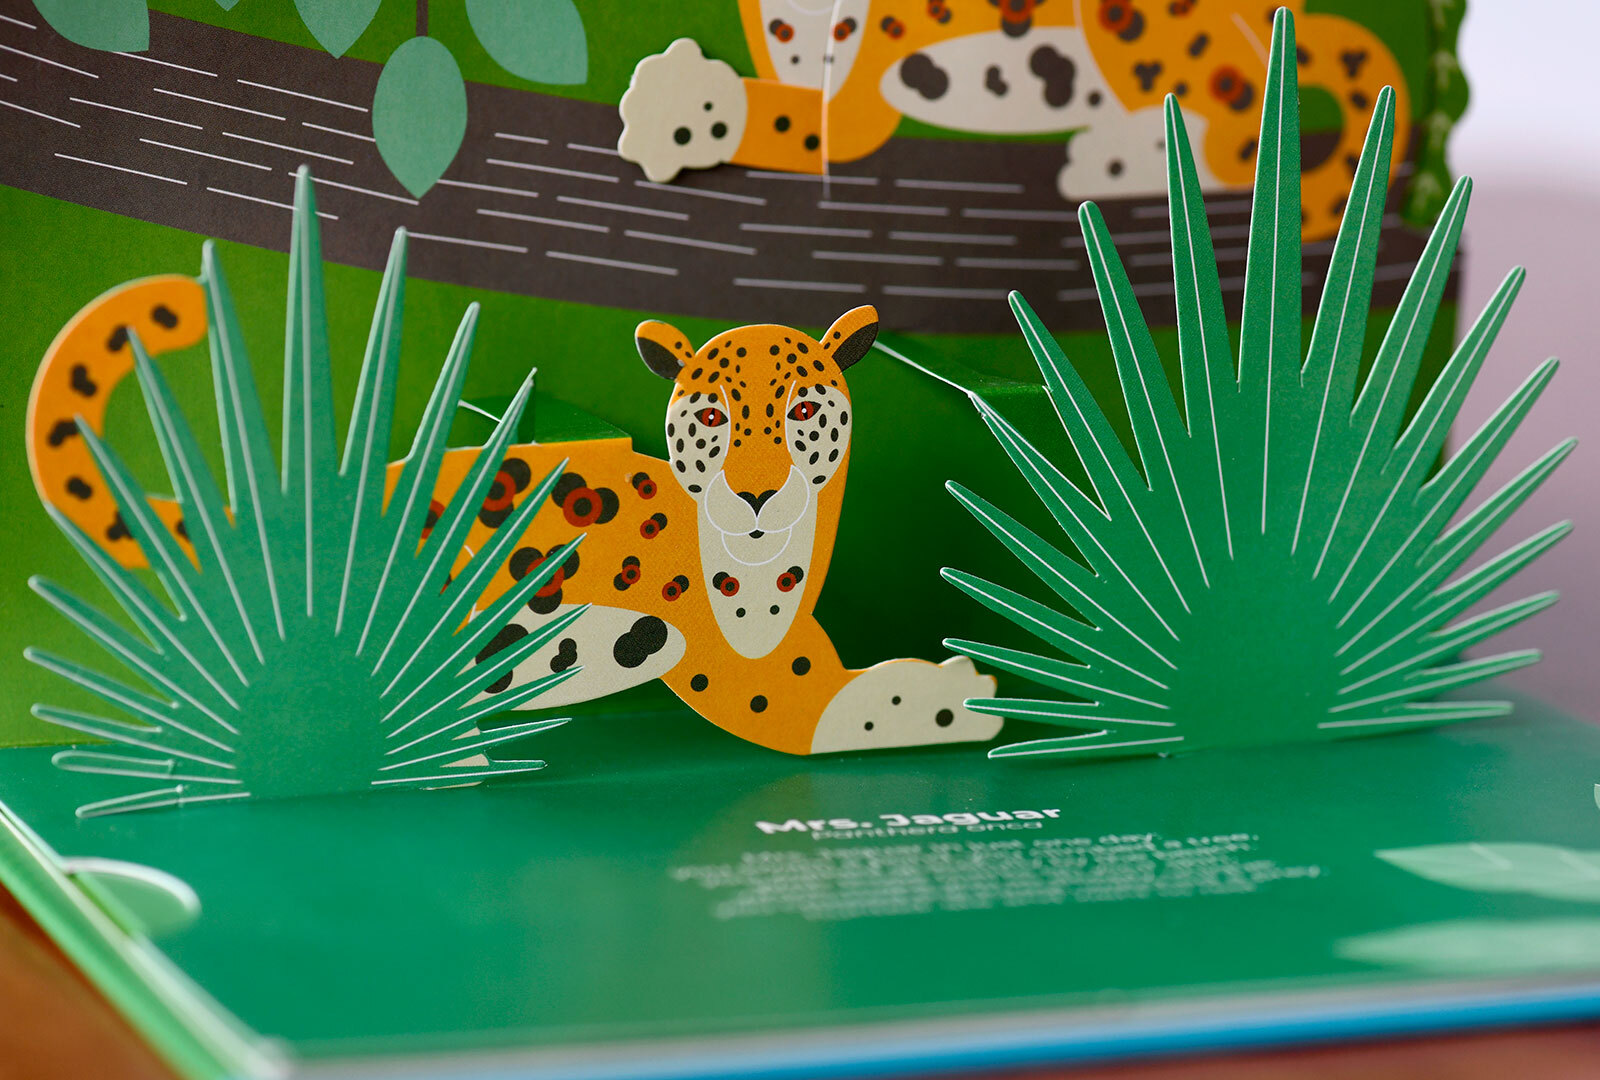 Ilustración interna del libro donde se aprecia un jaguar entre la vegetación en relieve junto a …